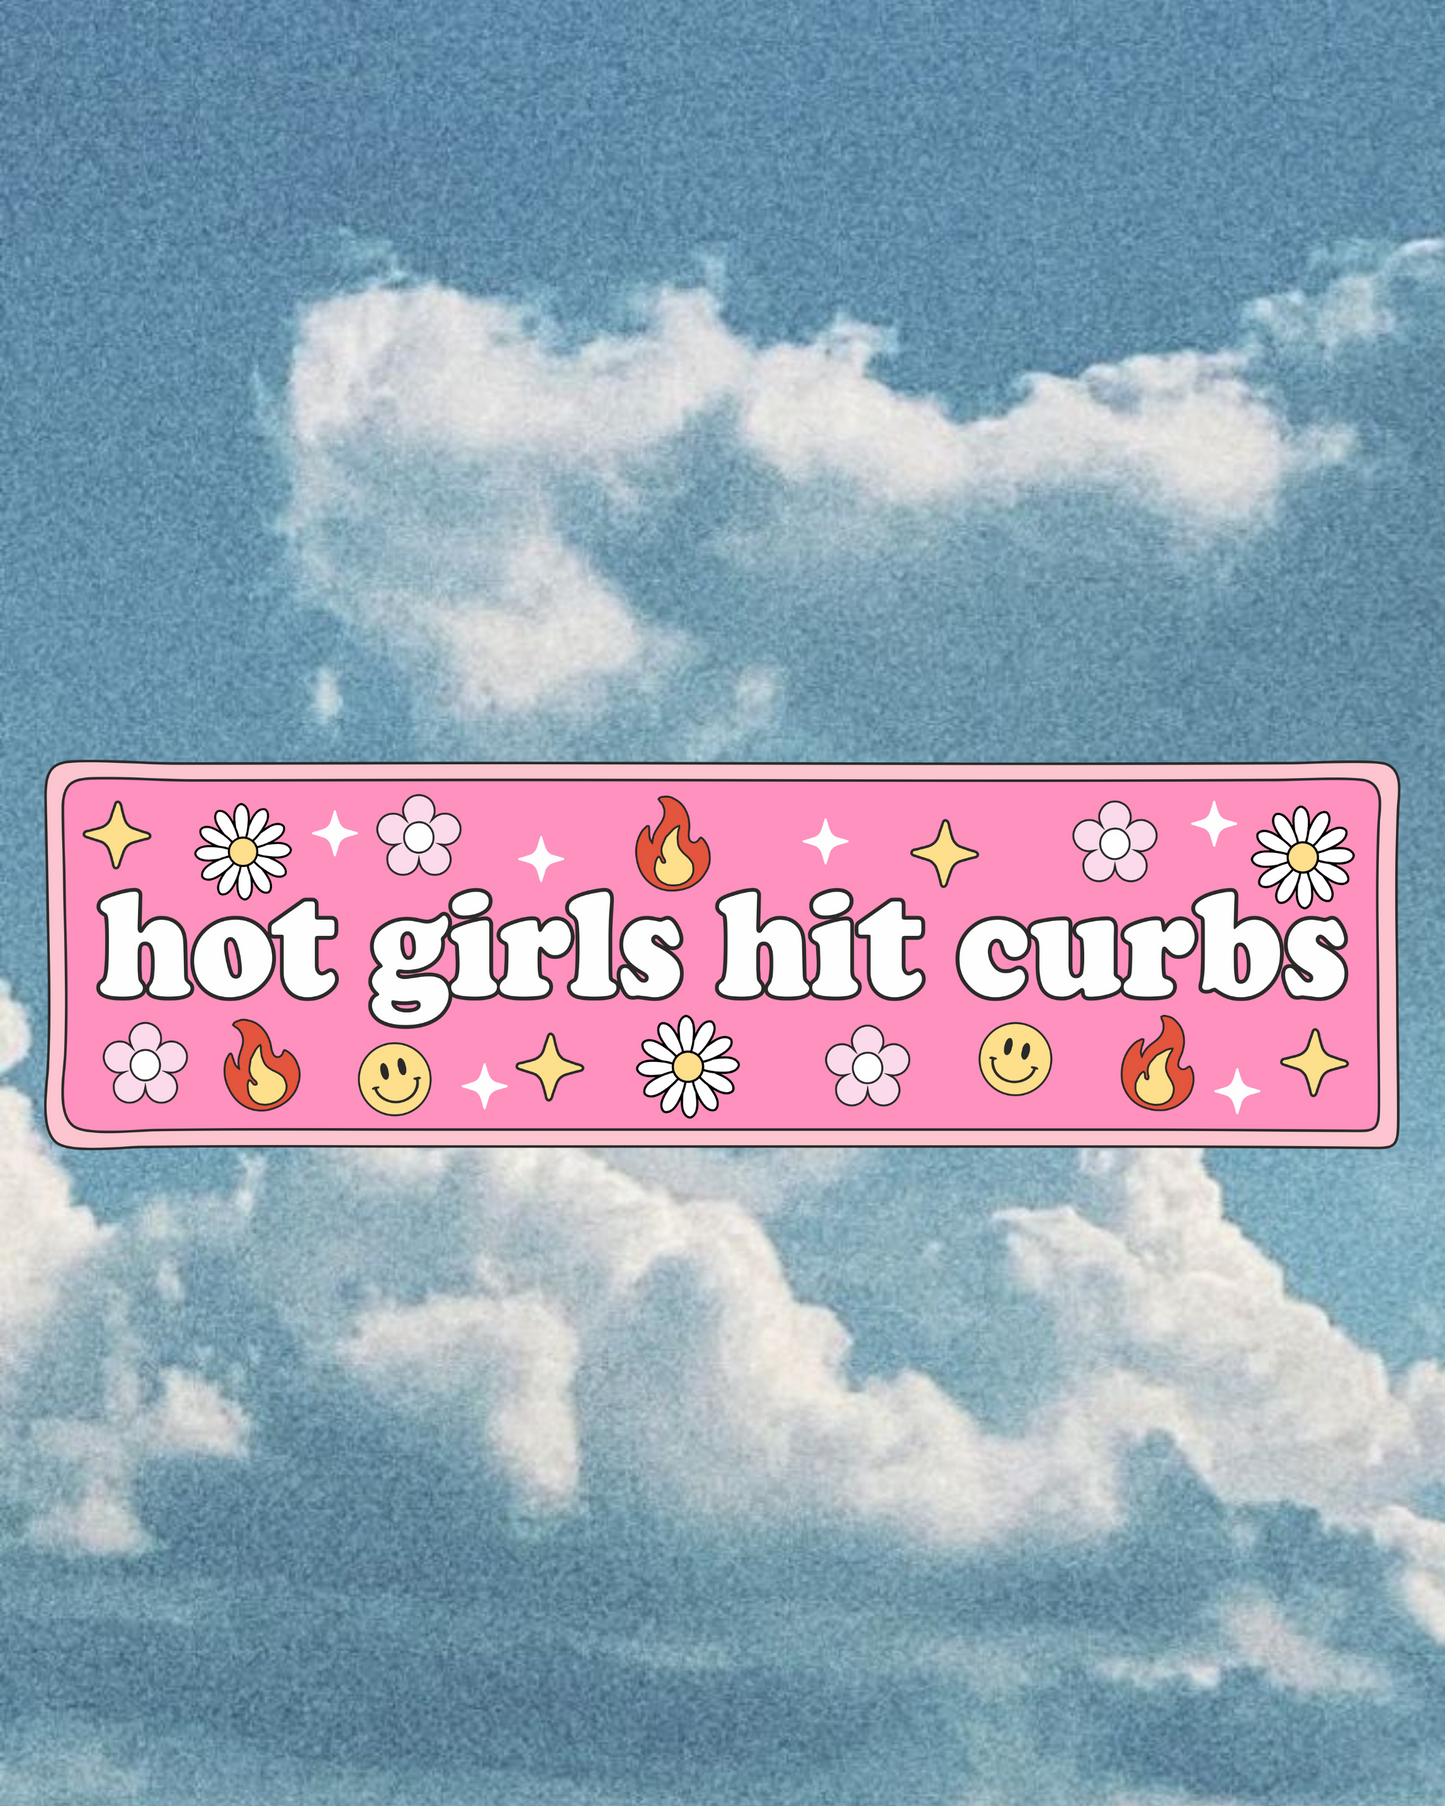 Hot girls Hit Curbs - Bumper Sticker